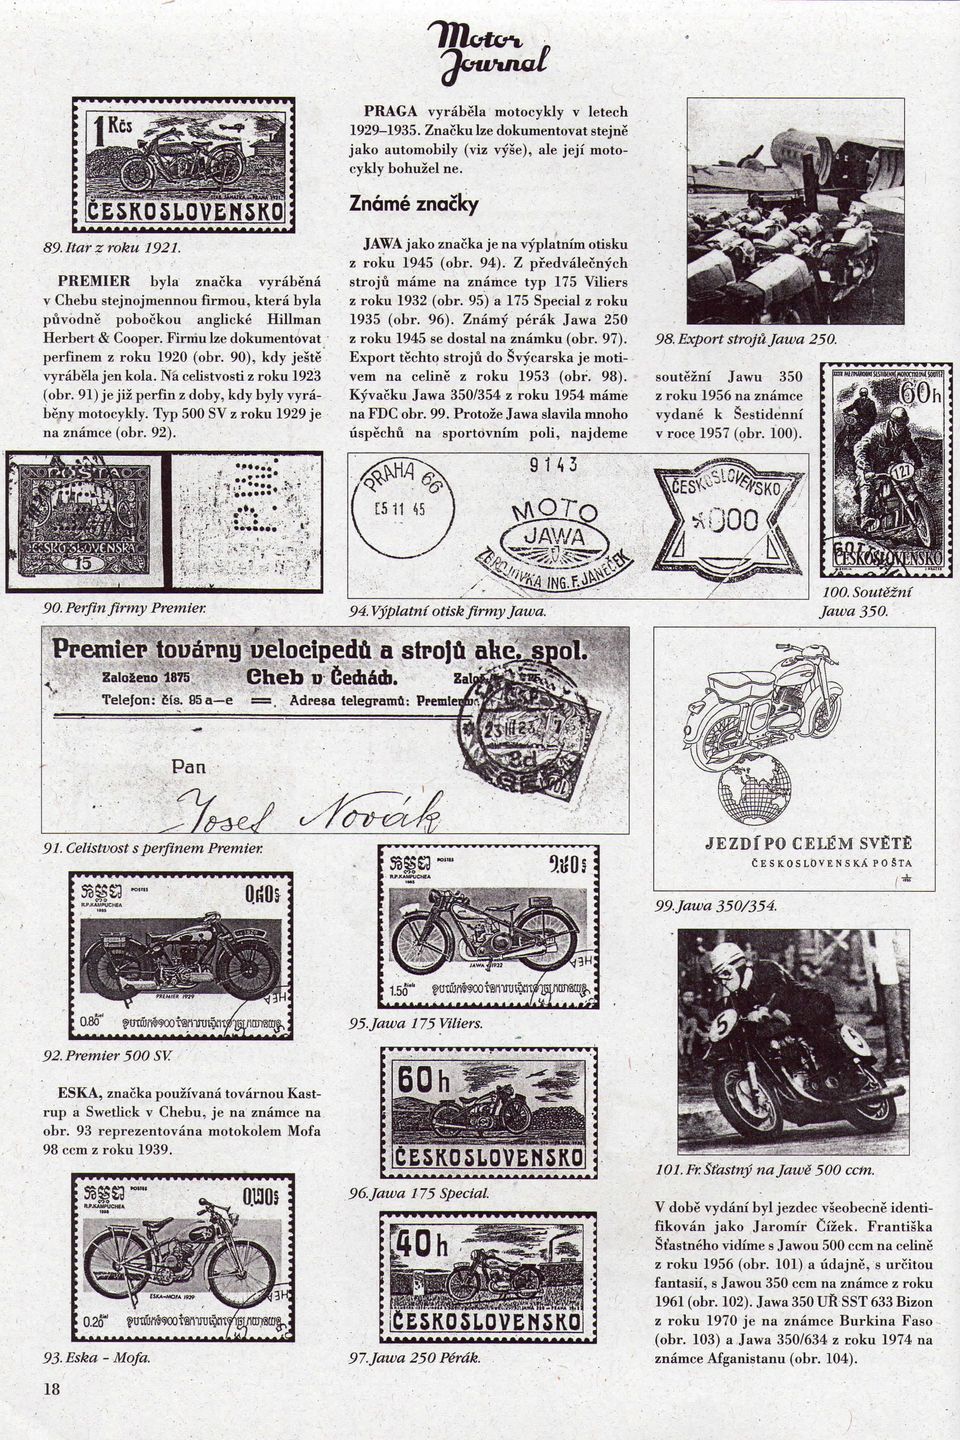 90), kdy jeste vyrabela jen kola. Na celistvosti z roku 1923 (obr. 91) je jiz perfin z doby, kdy byly vyrabeny motocykly. Typ 500 SV z roku 1929 je na znamce (obr. 92).